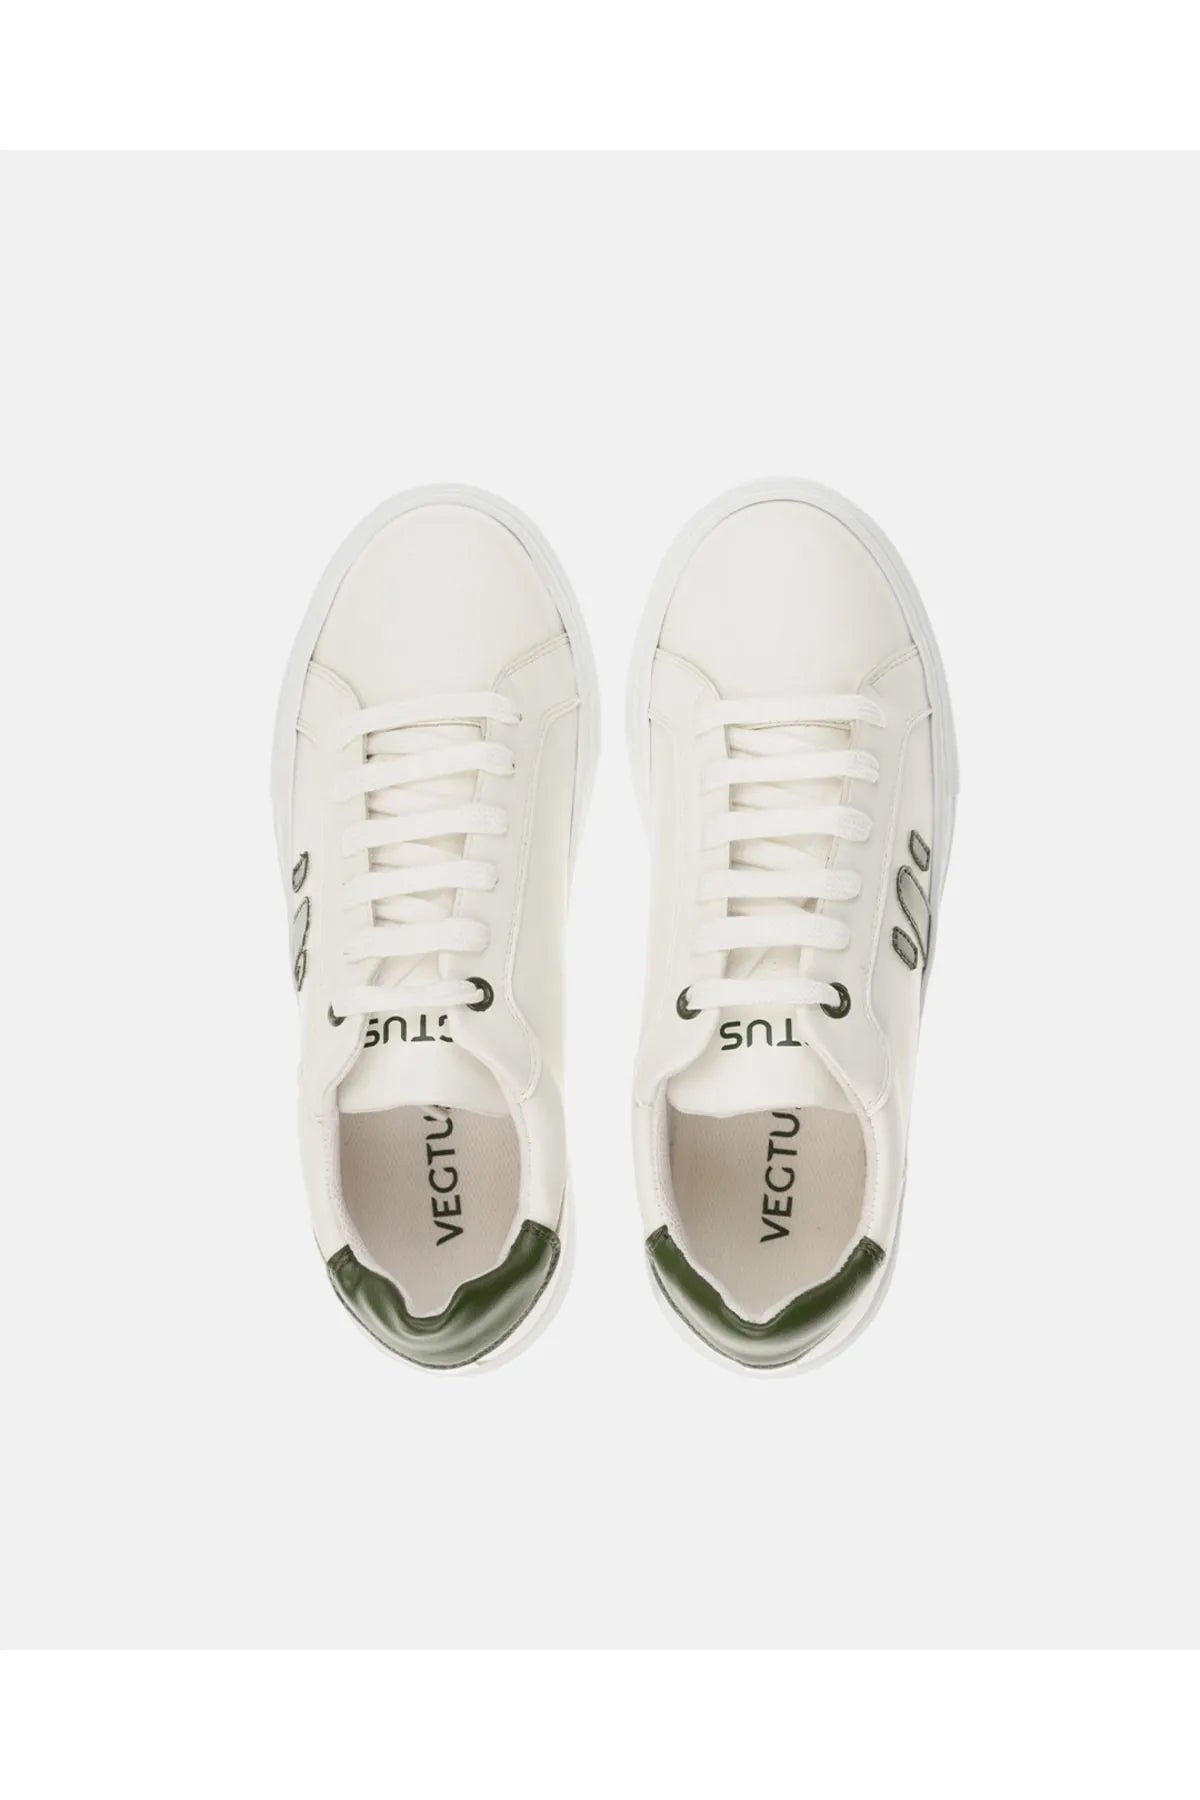 Vegtus Nopal Erkek Spor Ayakkabı - Beyaz/Yeşil